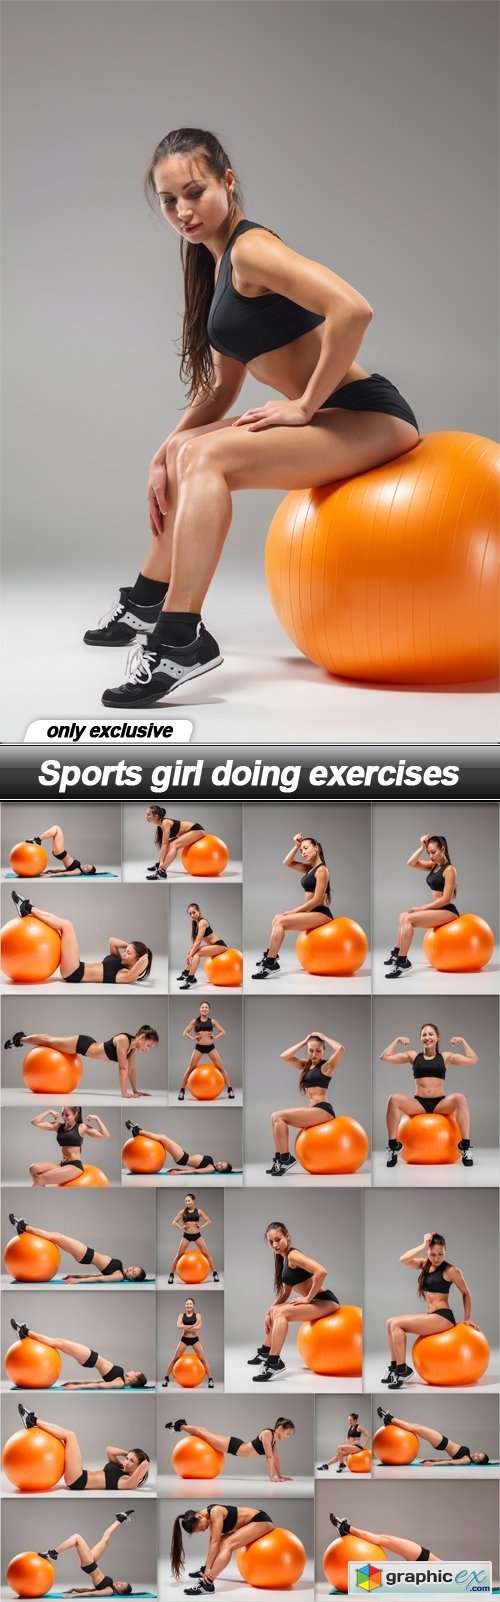 Sports girl doing exercises - 25 UHQ JPEG